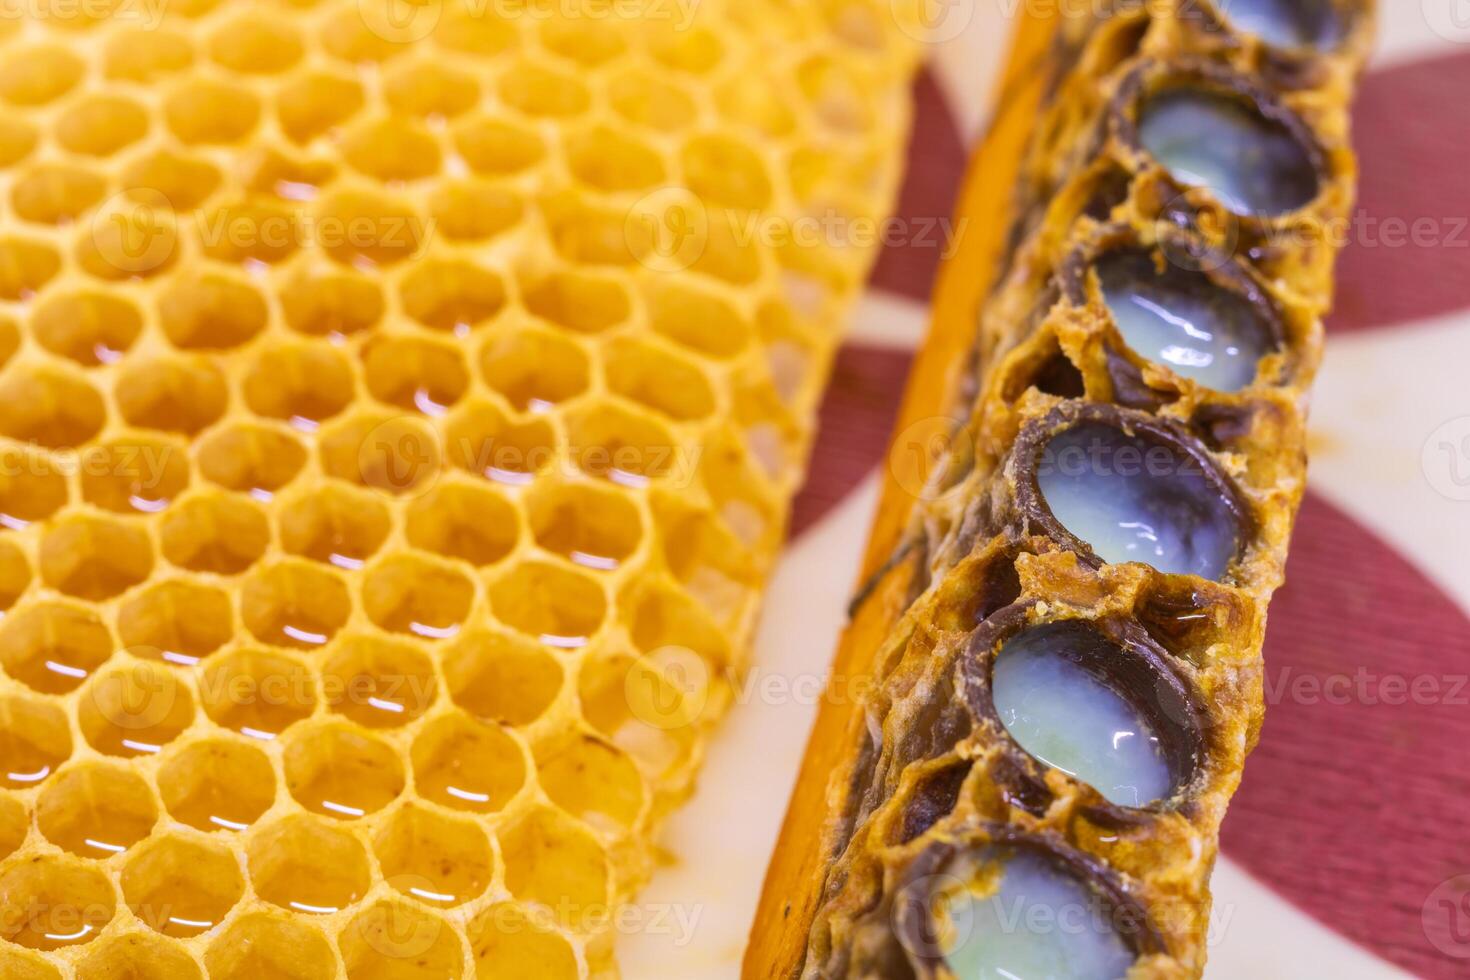 Regina ape cellule pieno con reale gelatina nel messa a fuoco. foto